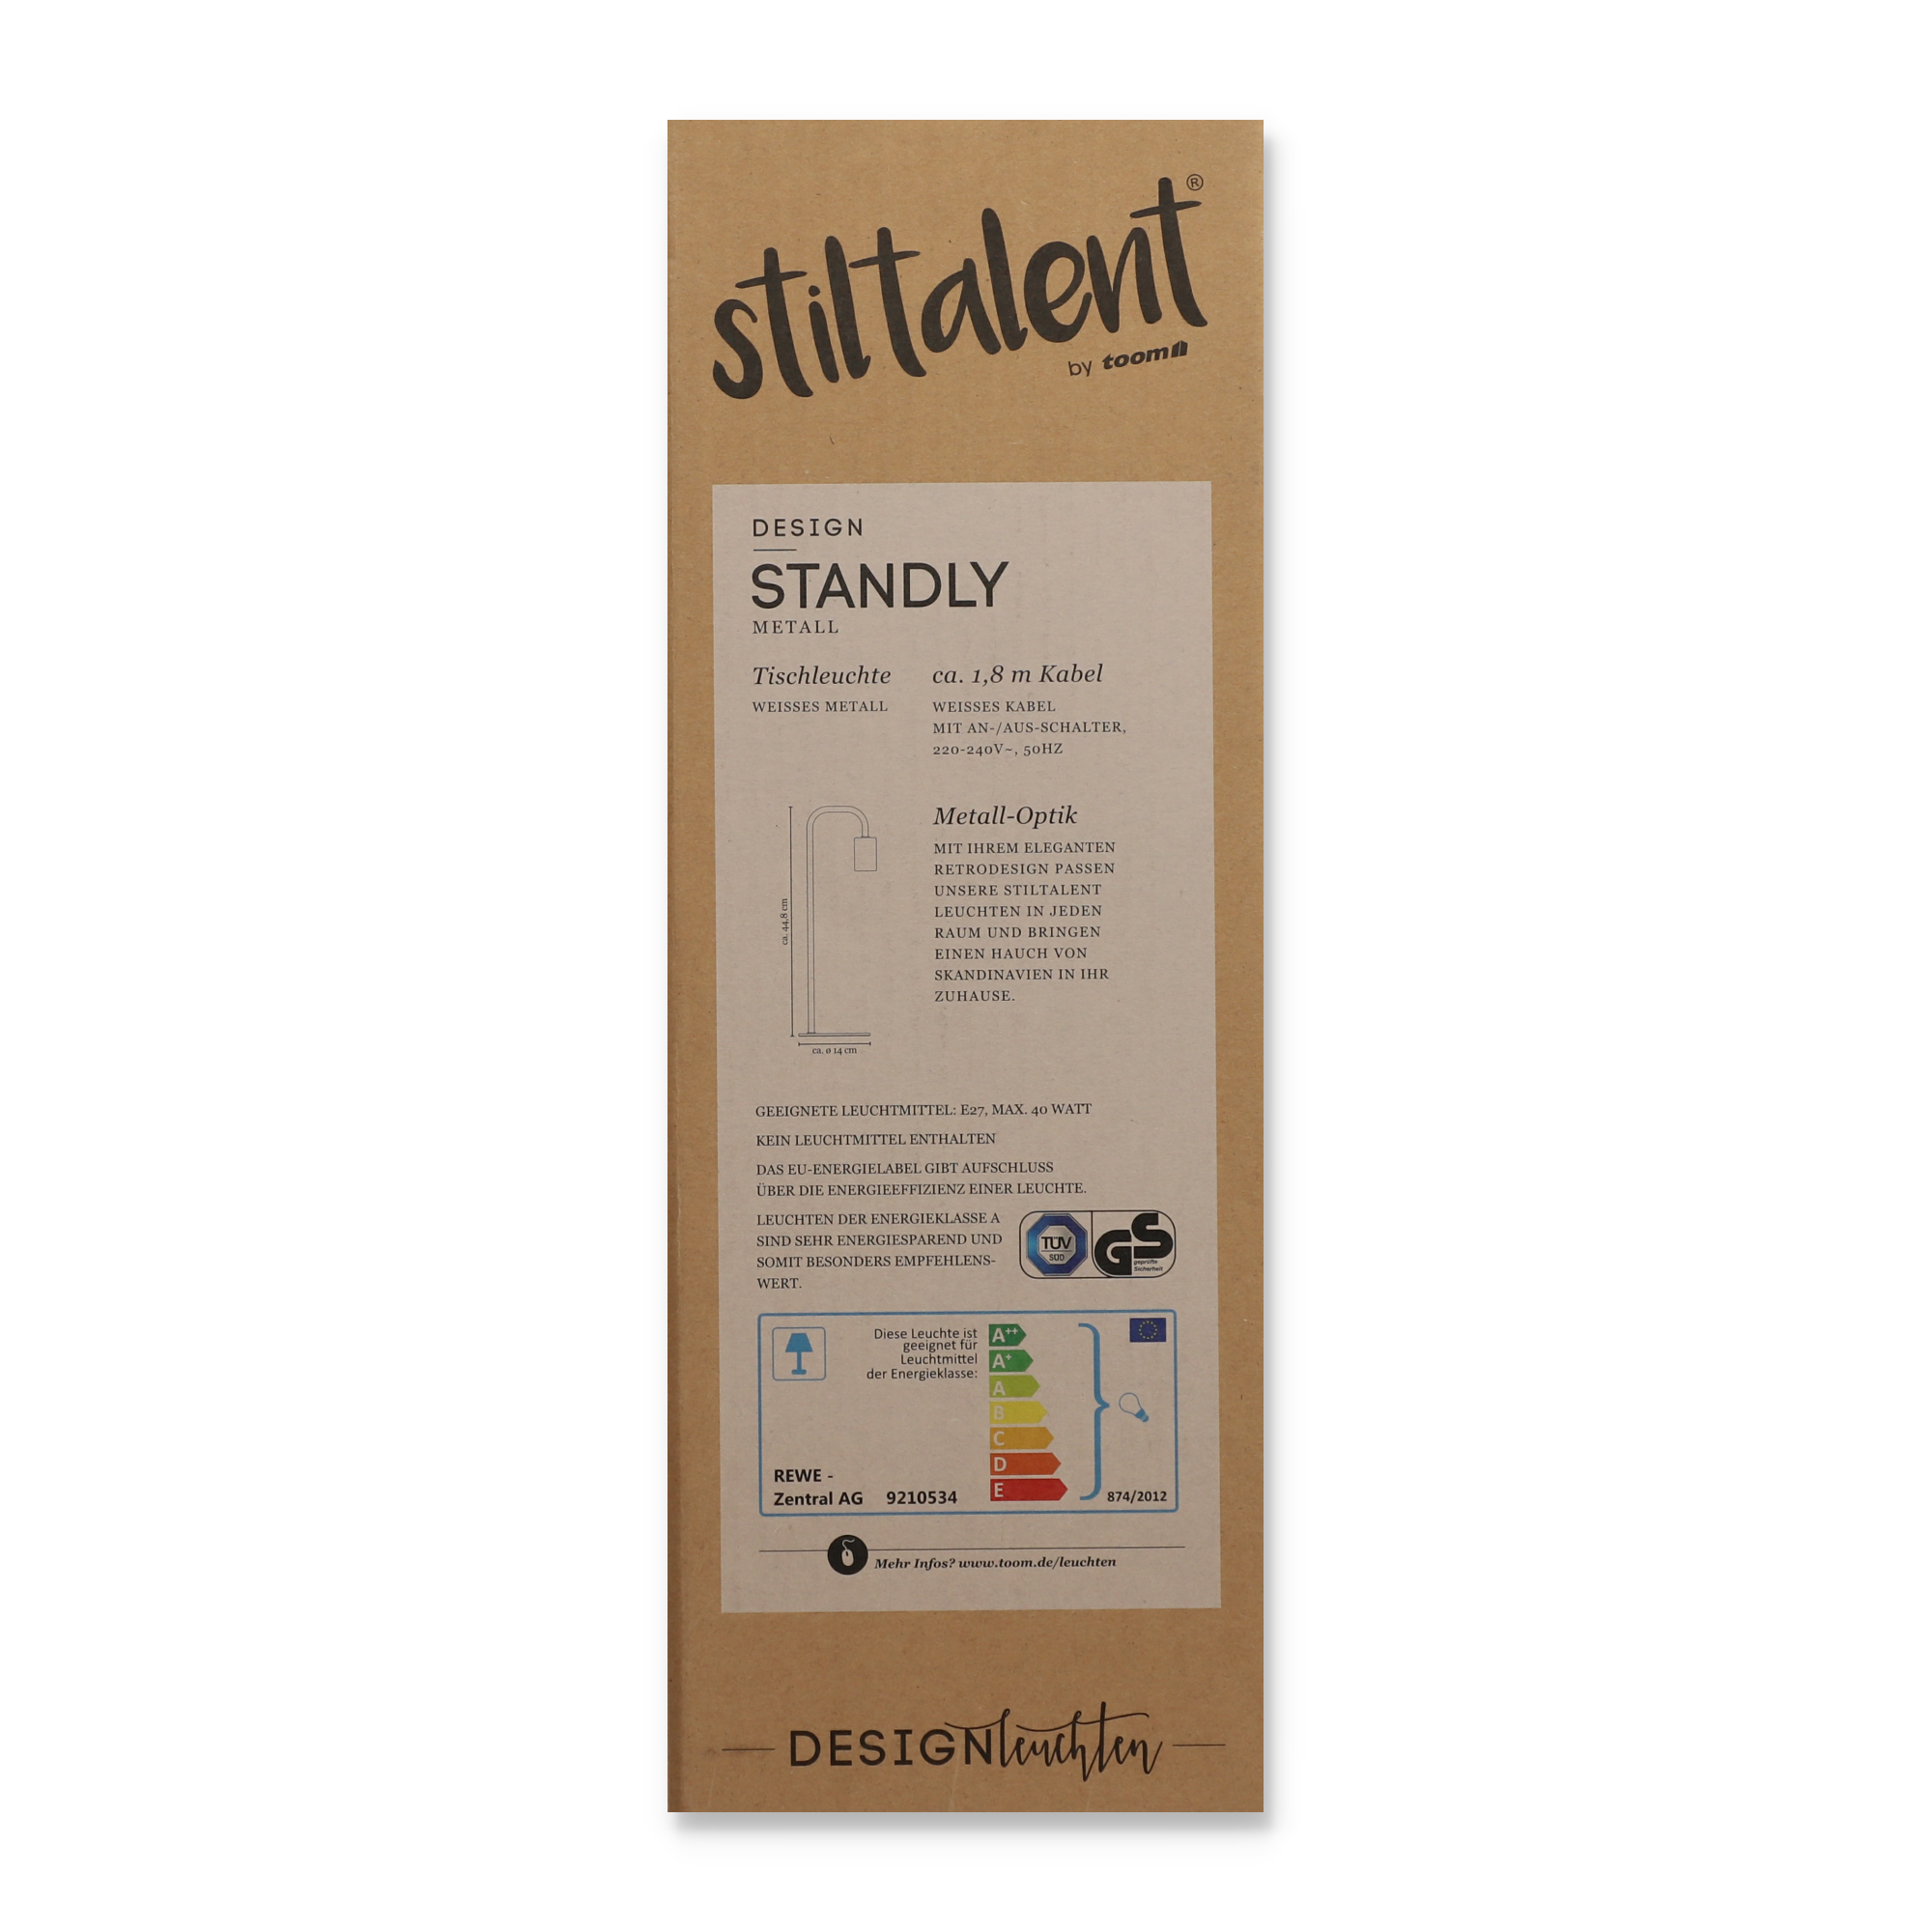 Stiltalent by toom® Tischleuchte 'Standly' weiß 44,8 cm + product picture